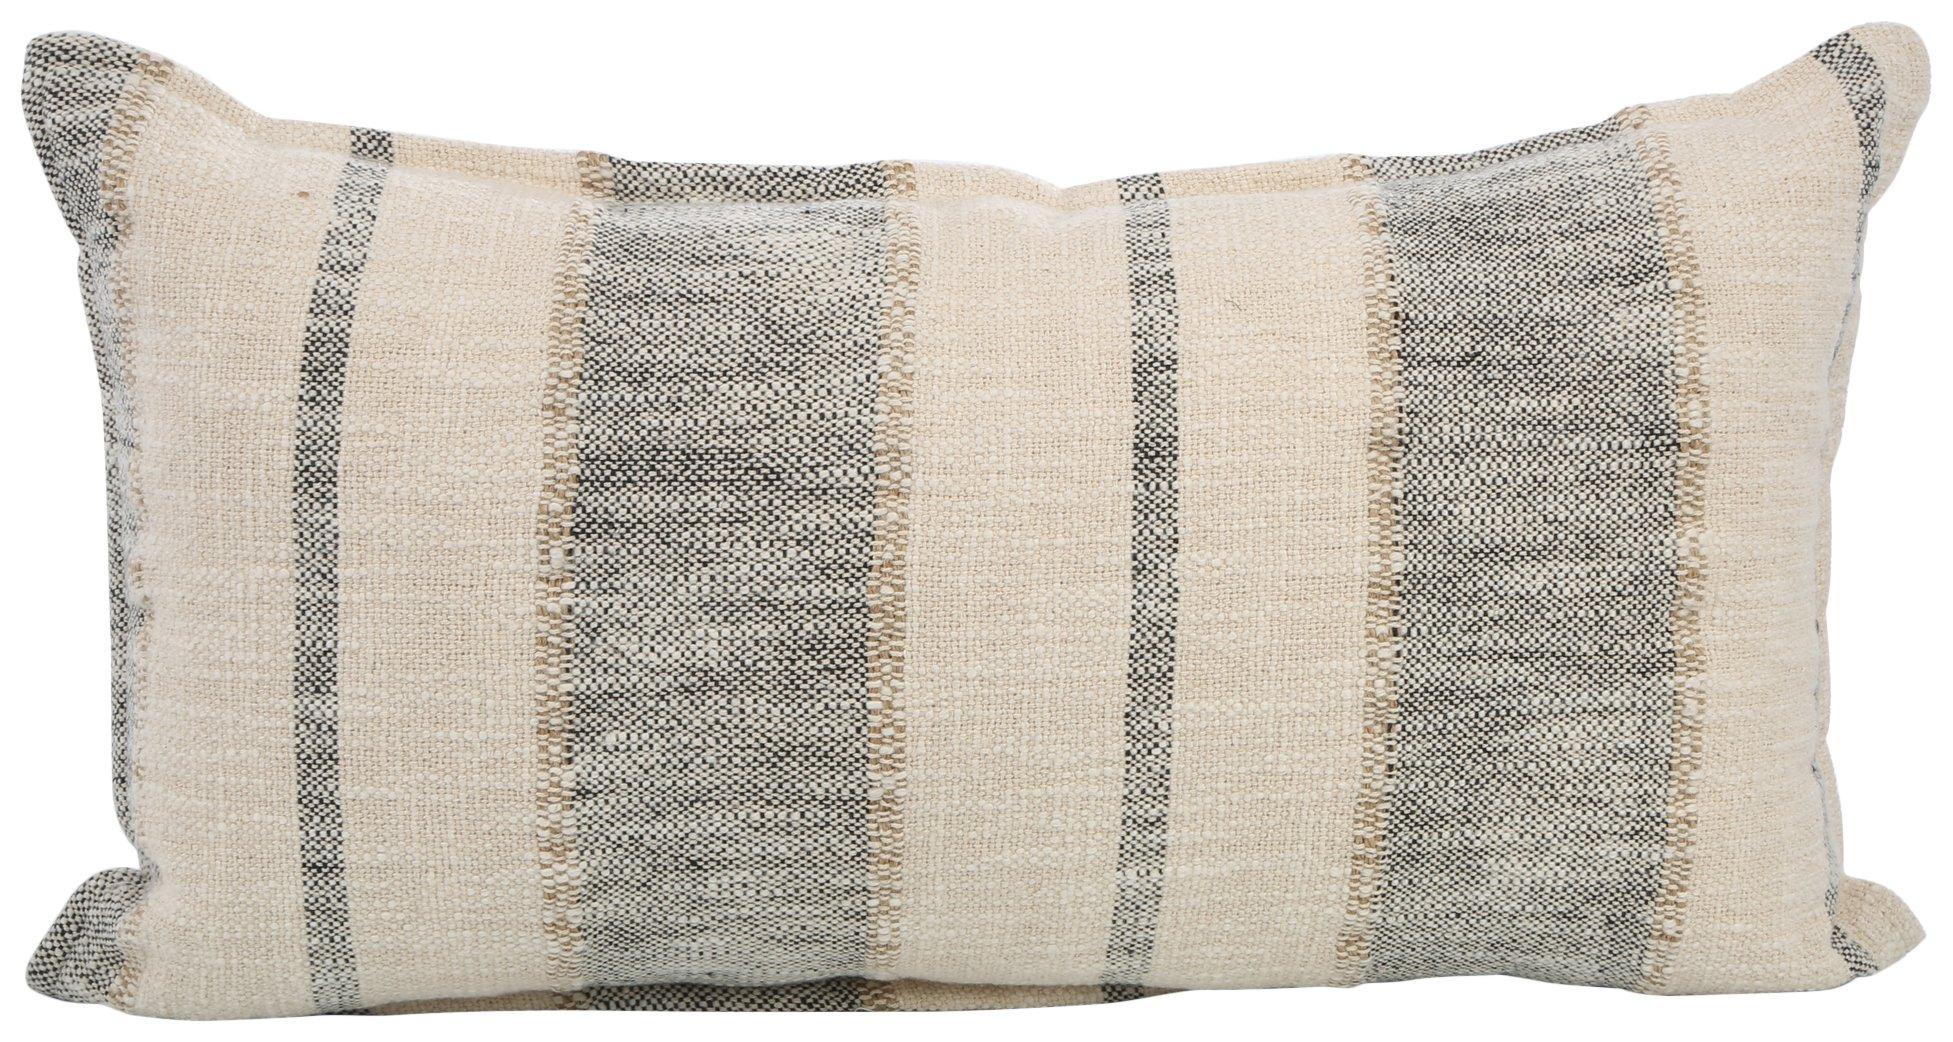 14x24 Firoz Embroidered Pillow